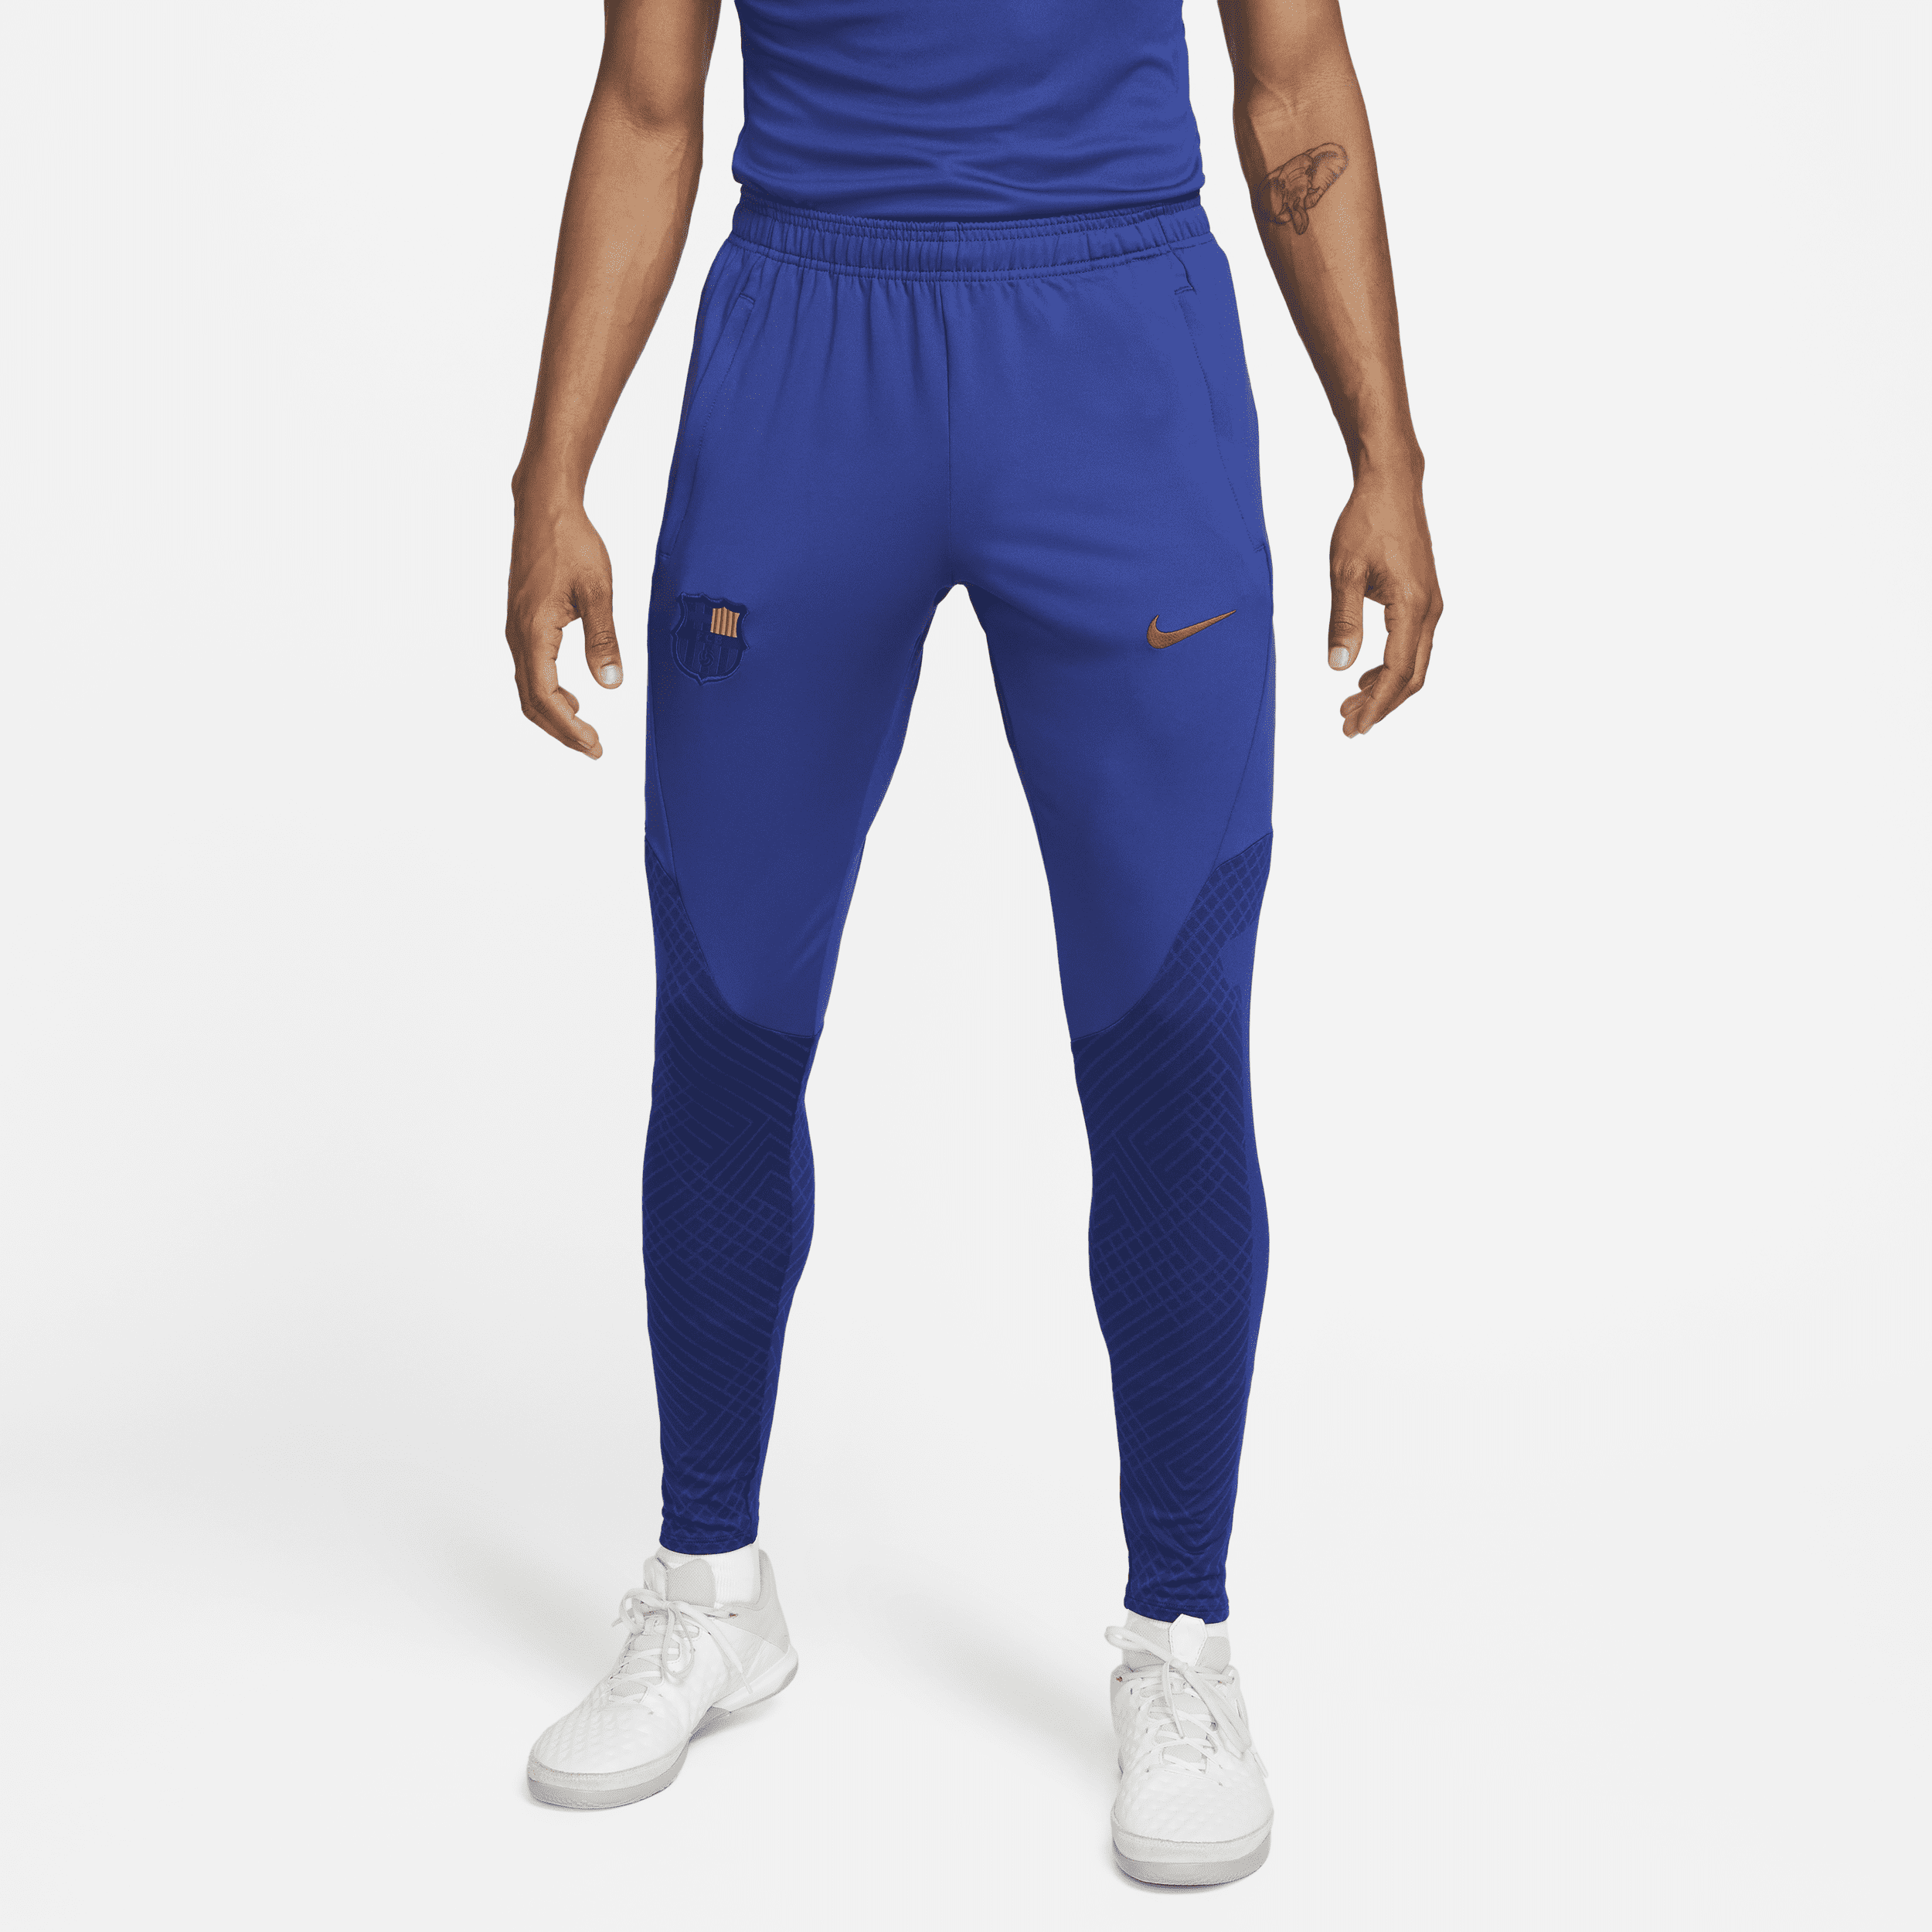 Barcelona Strike Nike Dri-FIT-fodboldbukser til mænd - blå